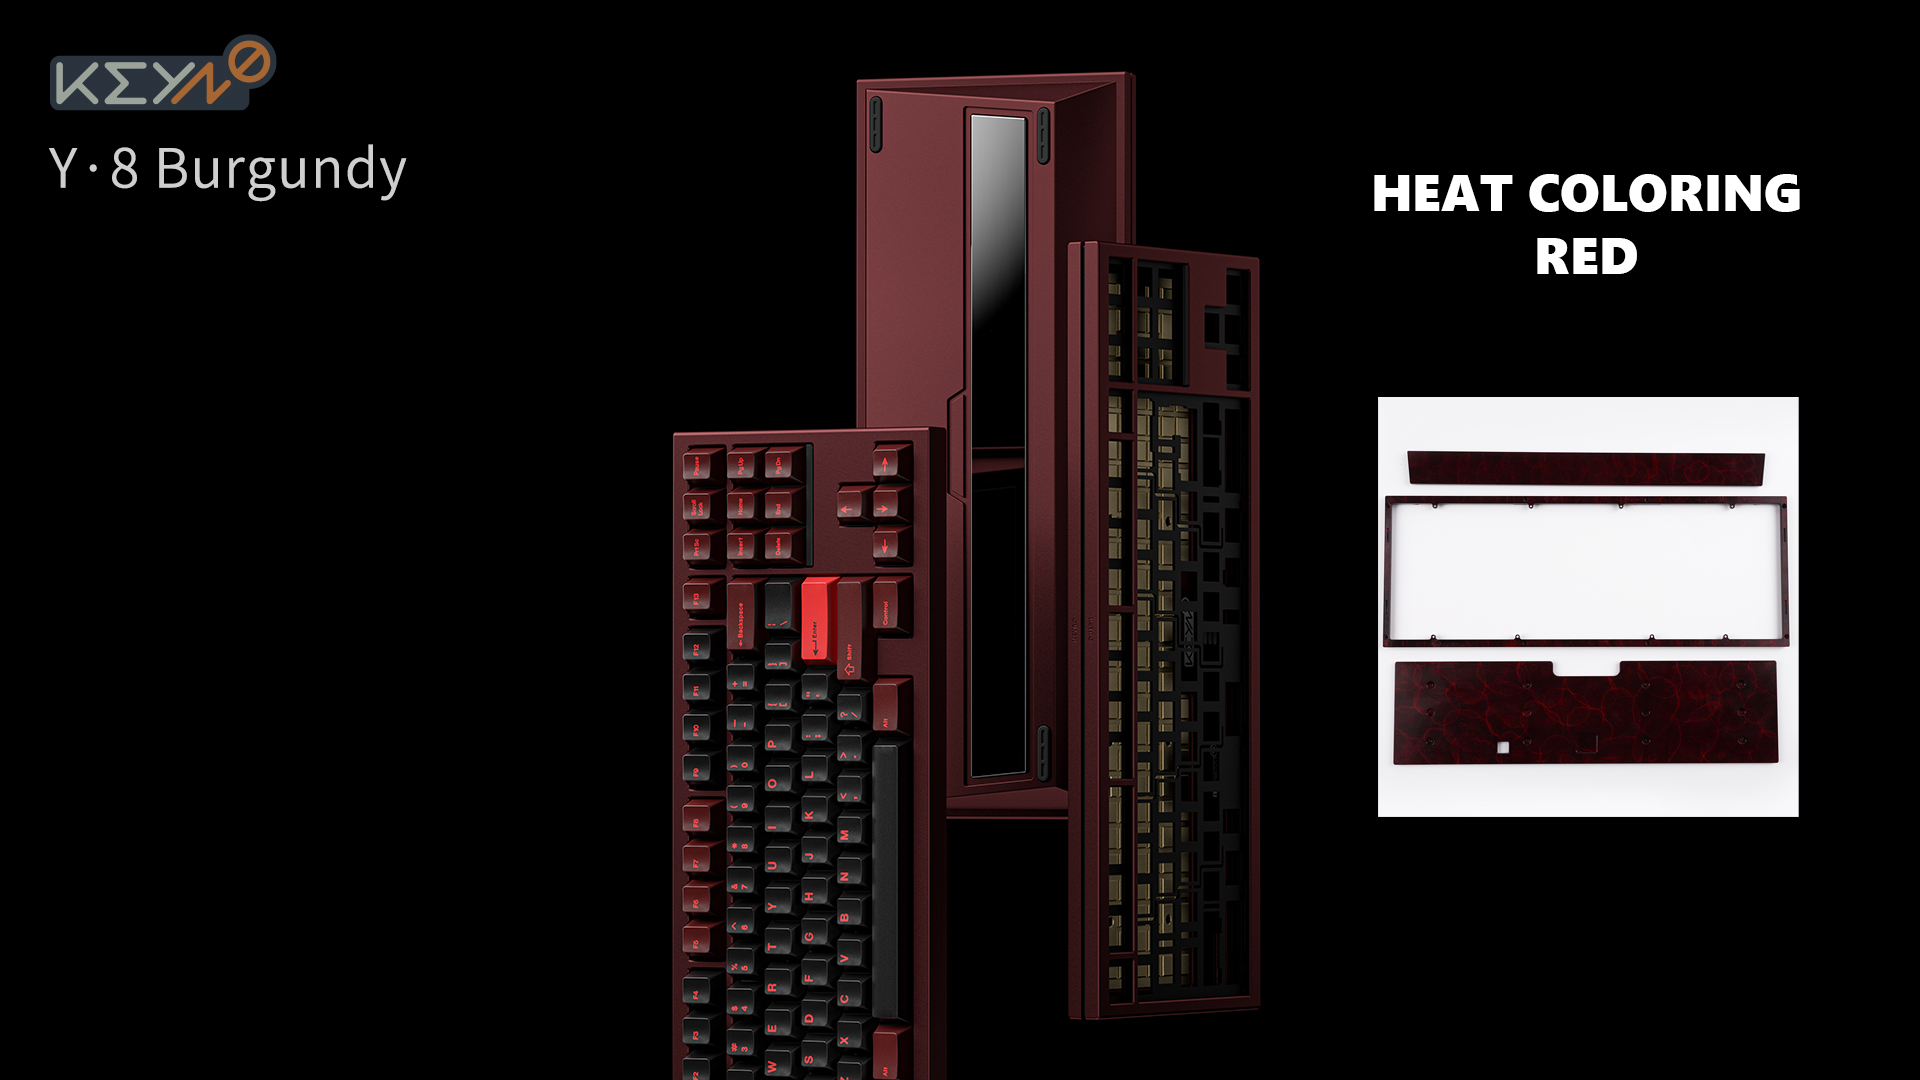 [In Stock] Bàn phím cơ Keyno Y8 - Heat Coloring Version